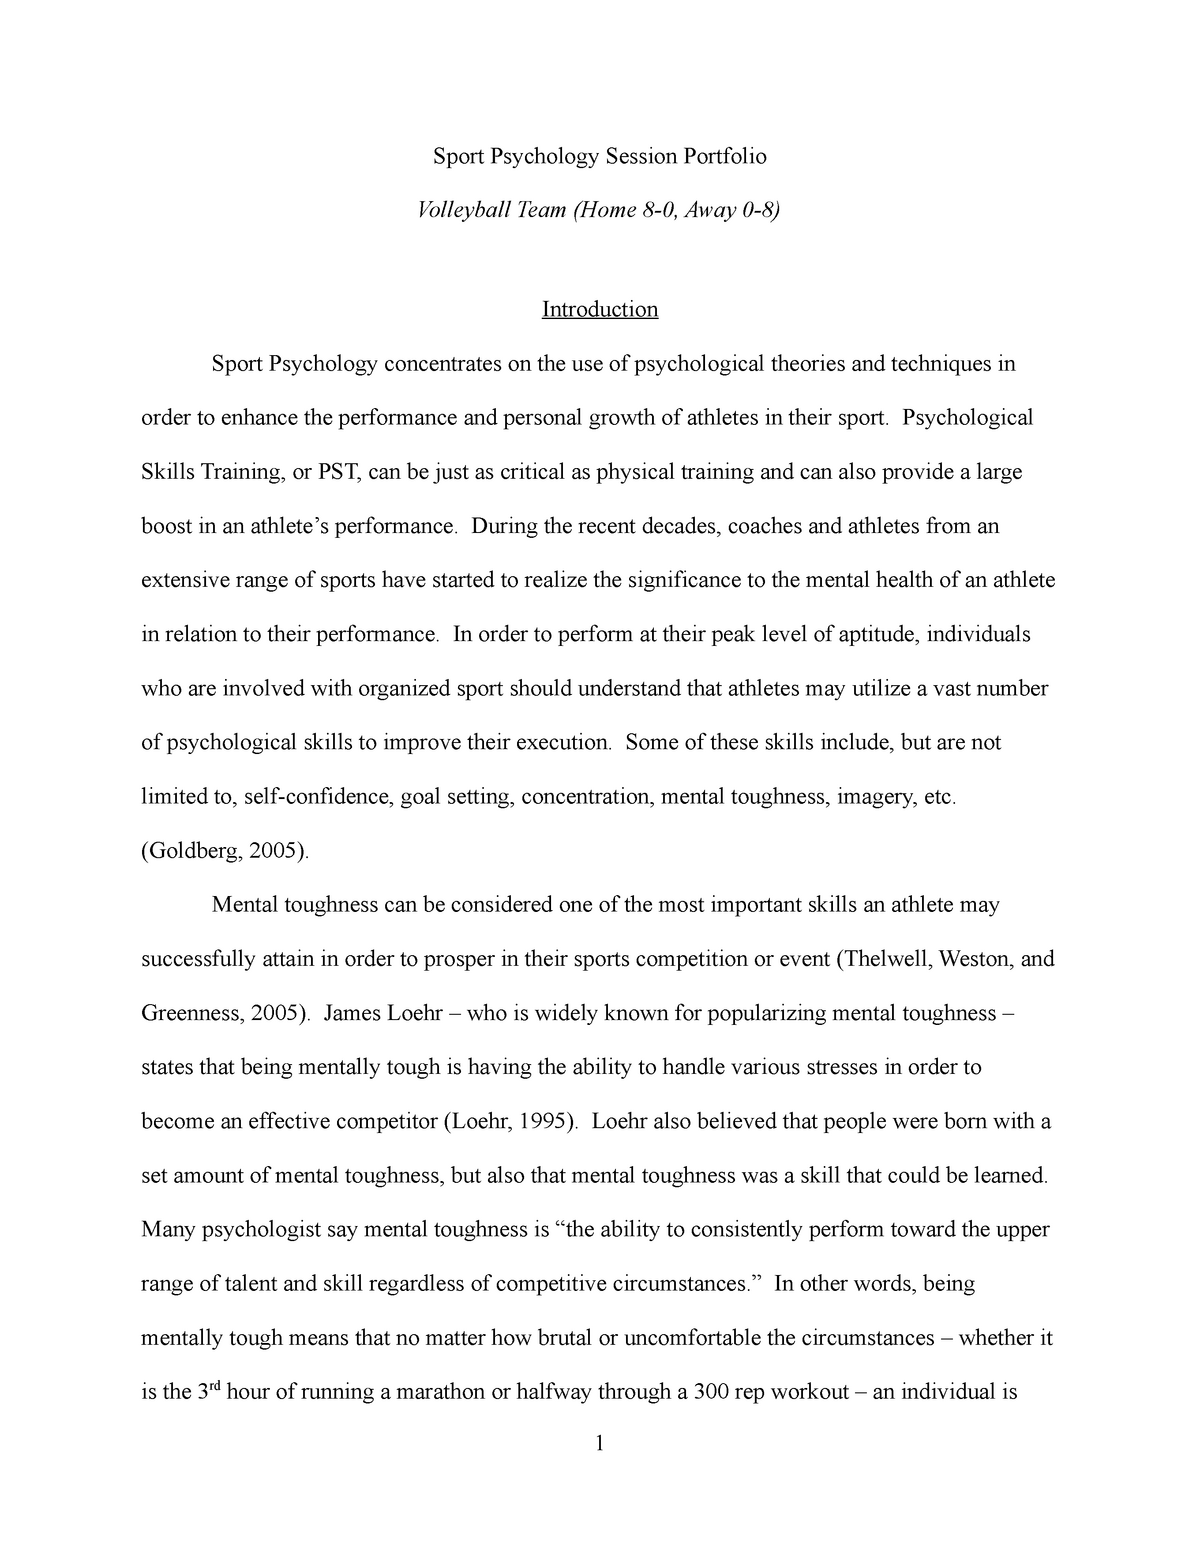 essay about sport psychology